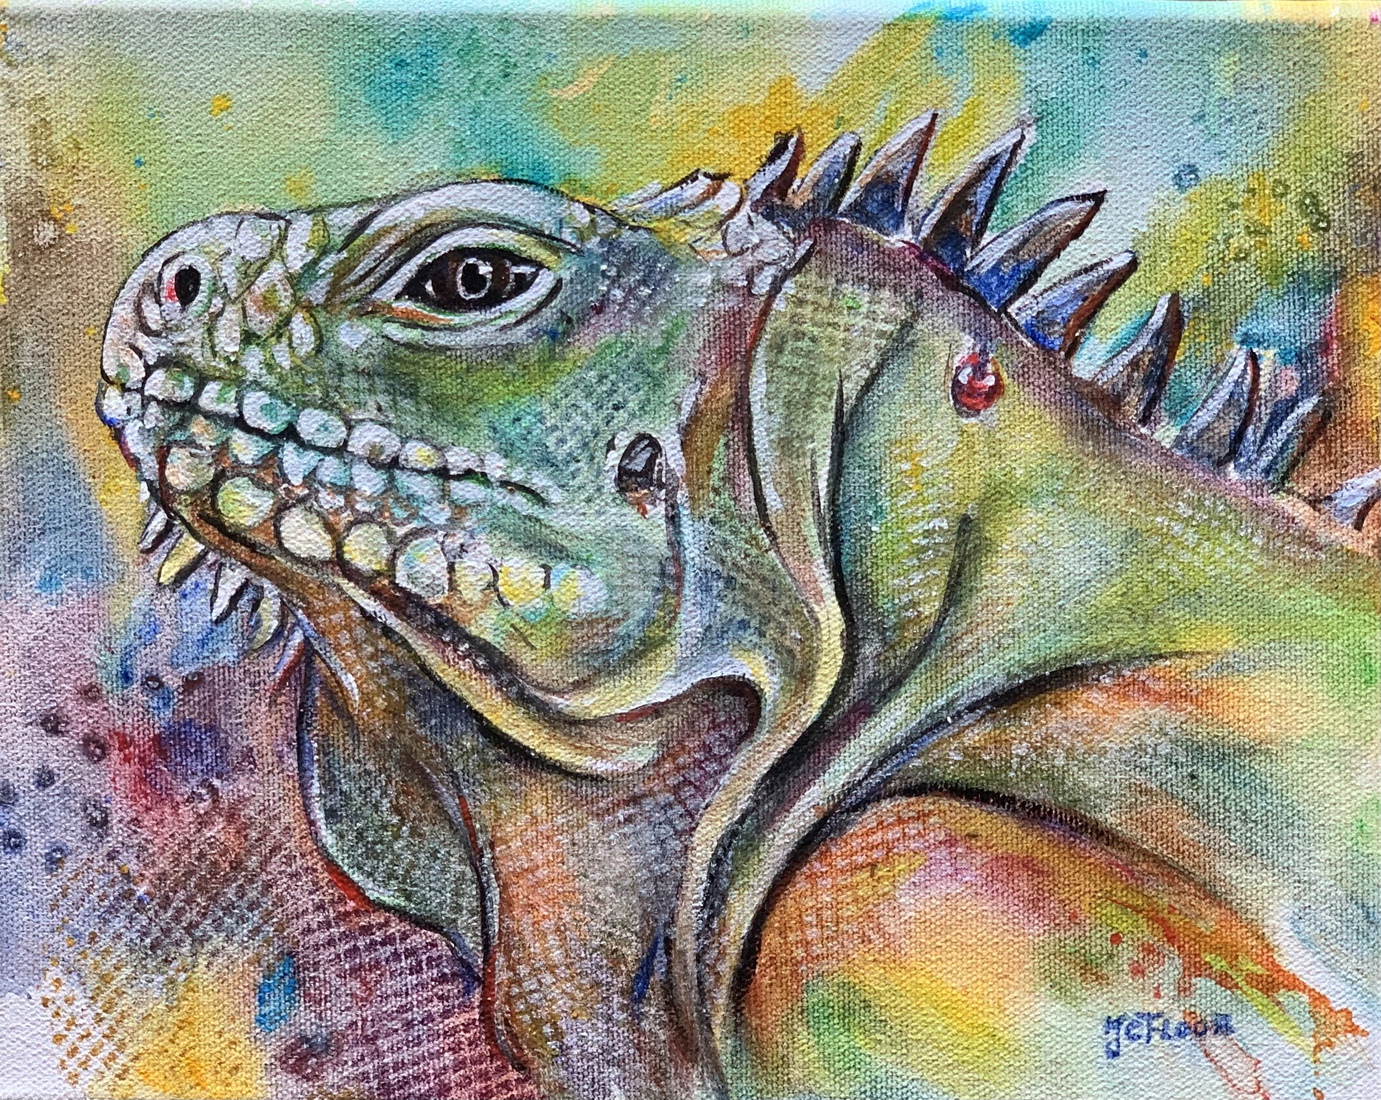 Iguana 